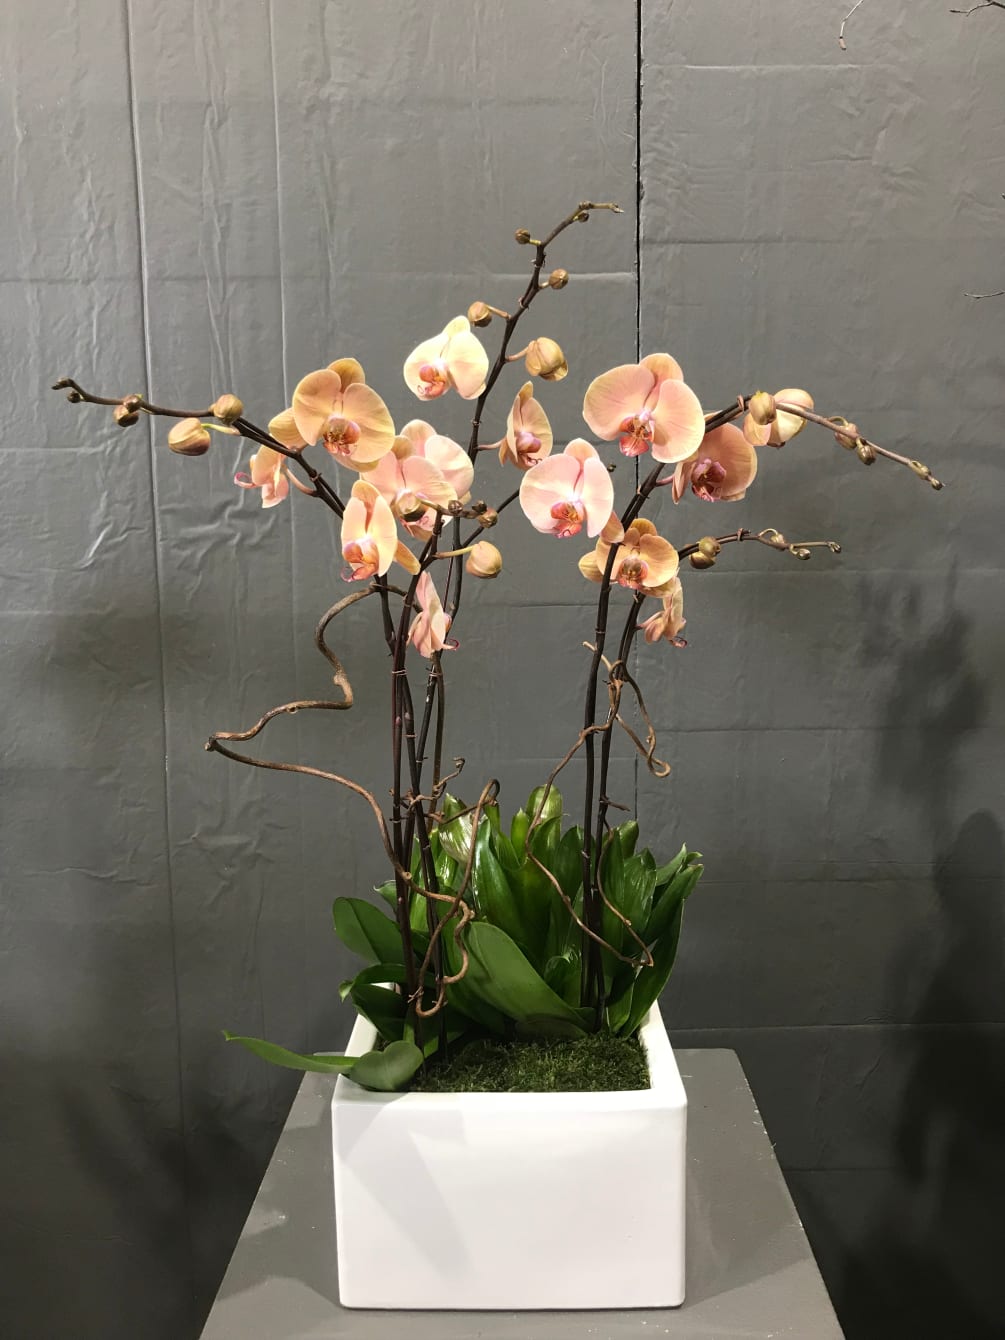 Five stems design with Bromeliad in 12 inches square white ceramic